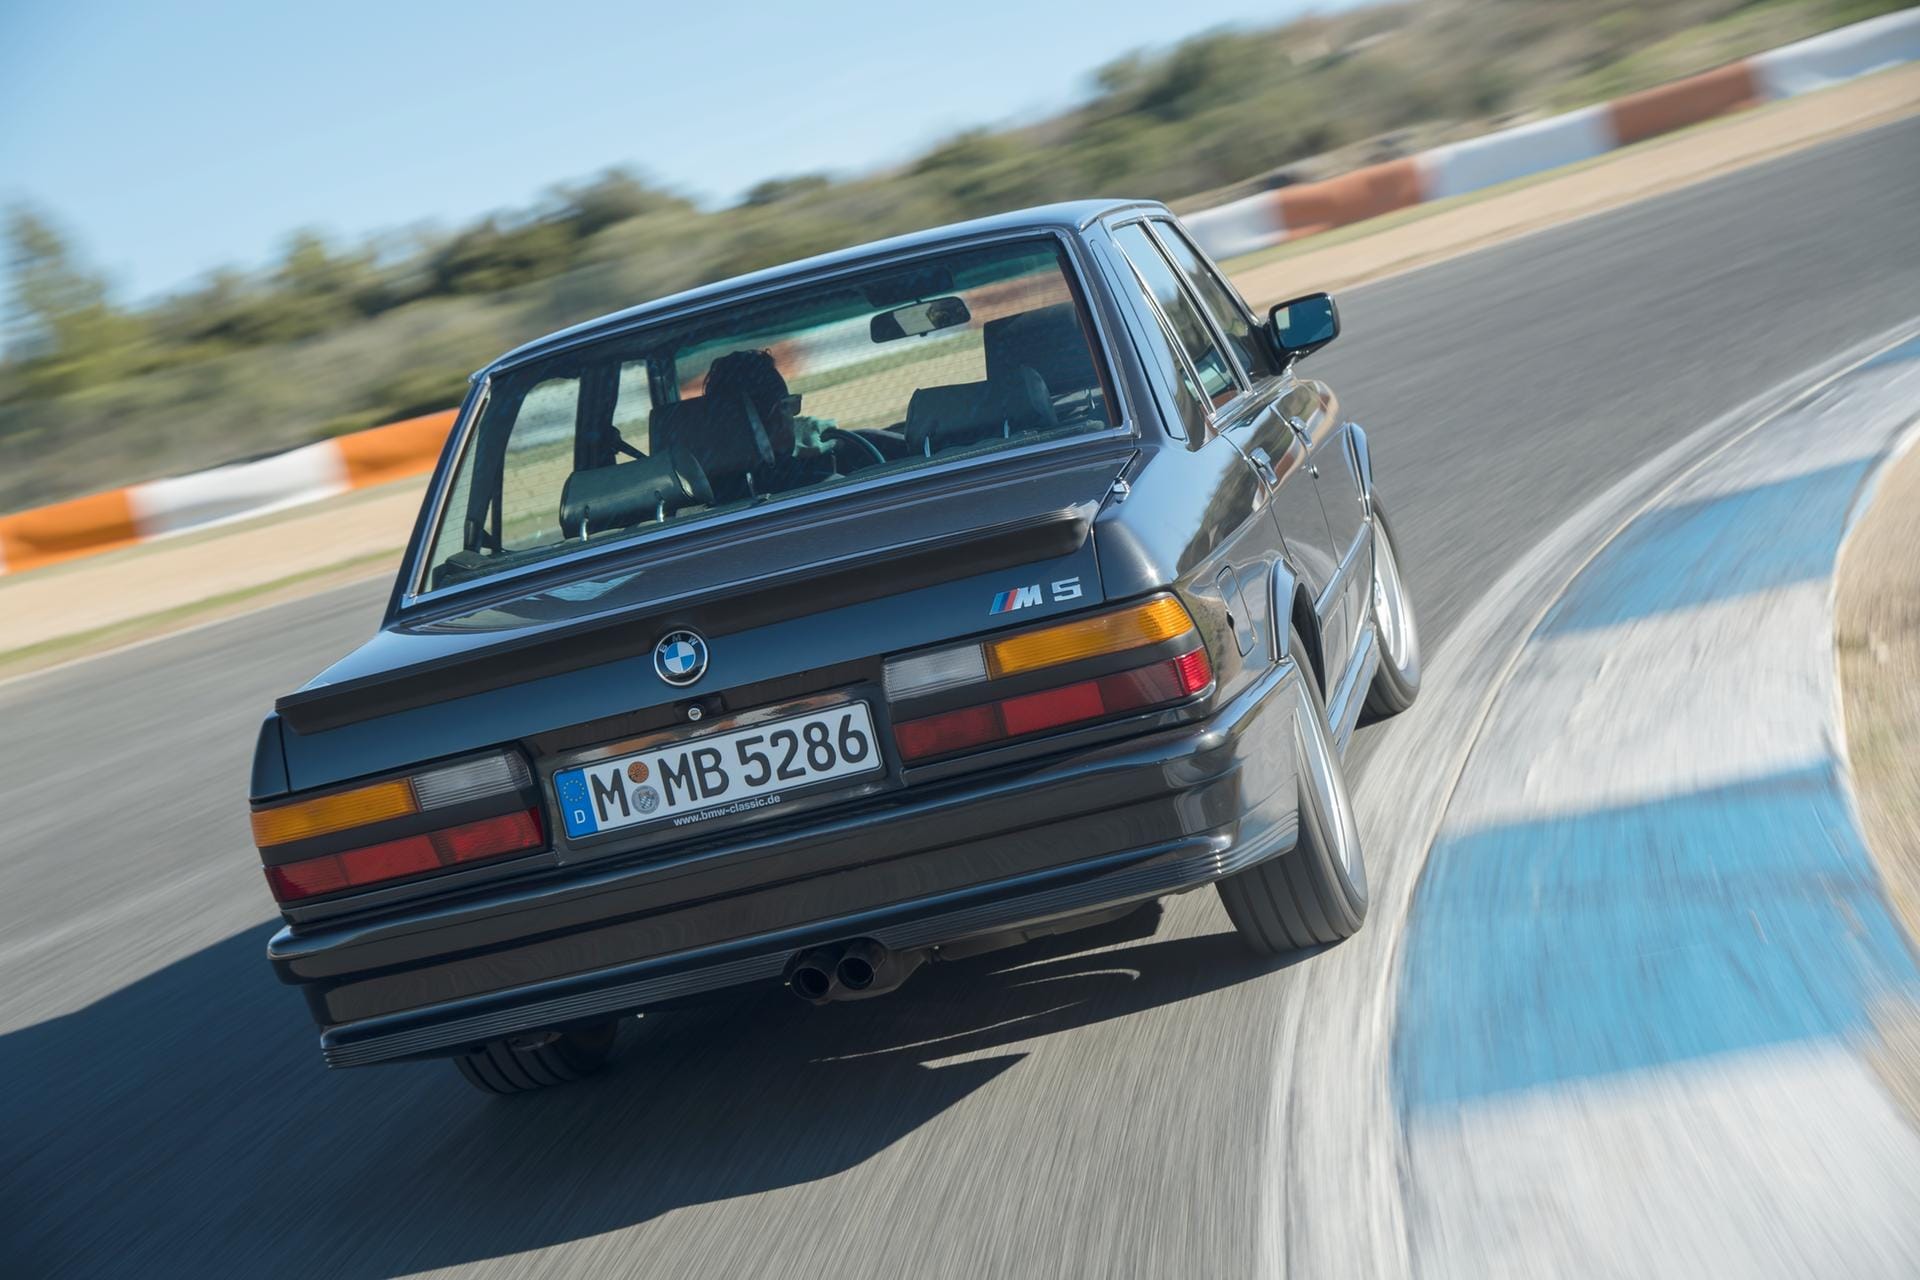 Flinke Limousine: Bis zu Tempo 245schnell konnte der erste BMW M5 werden – vor 33 Jahren ein sehr beeindruckender Wert.